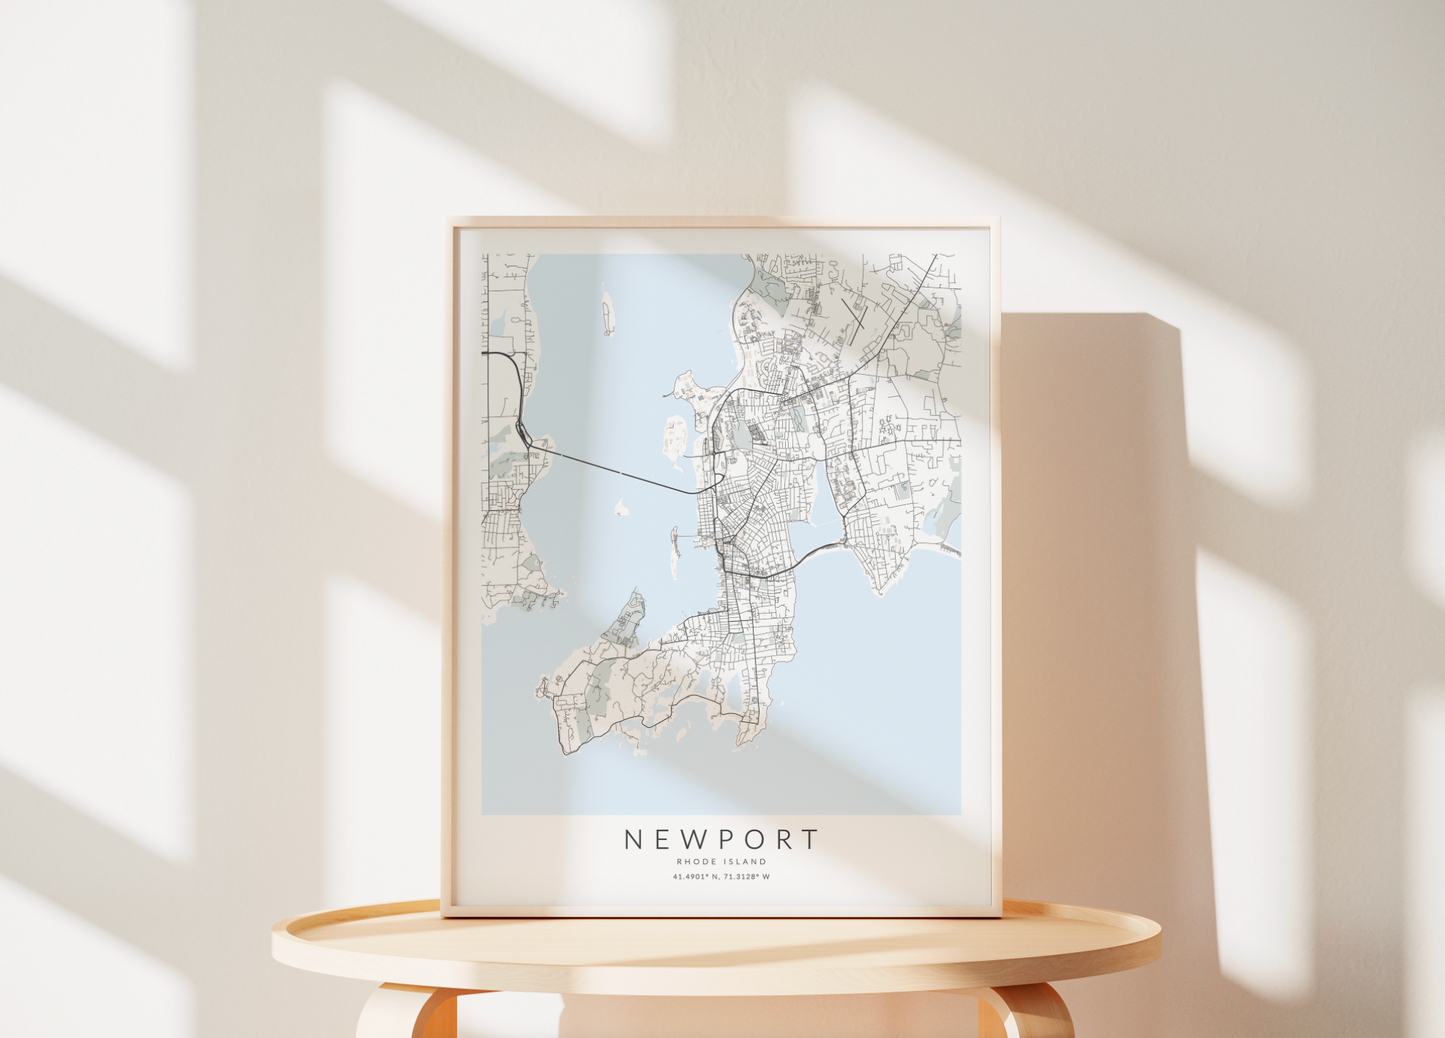 Newport Map Print